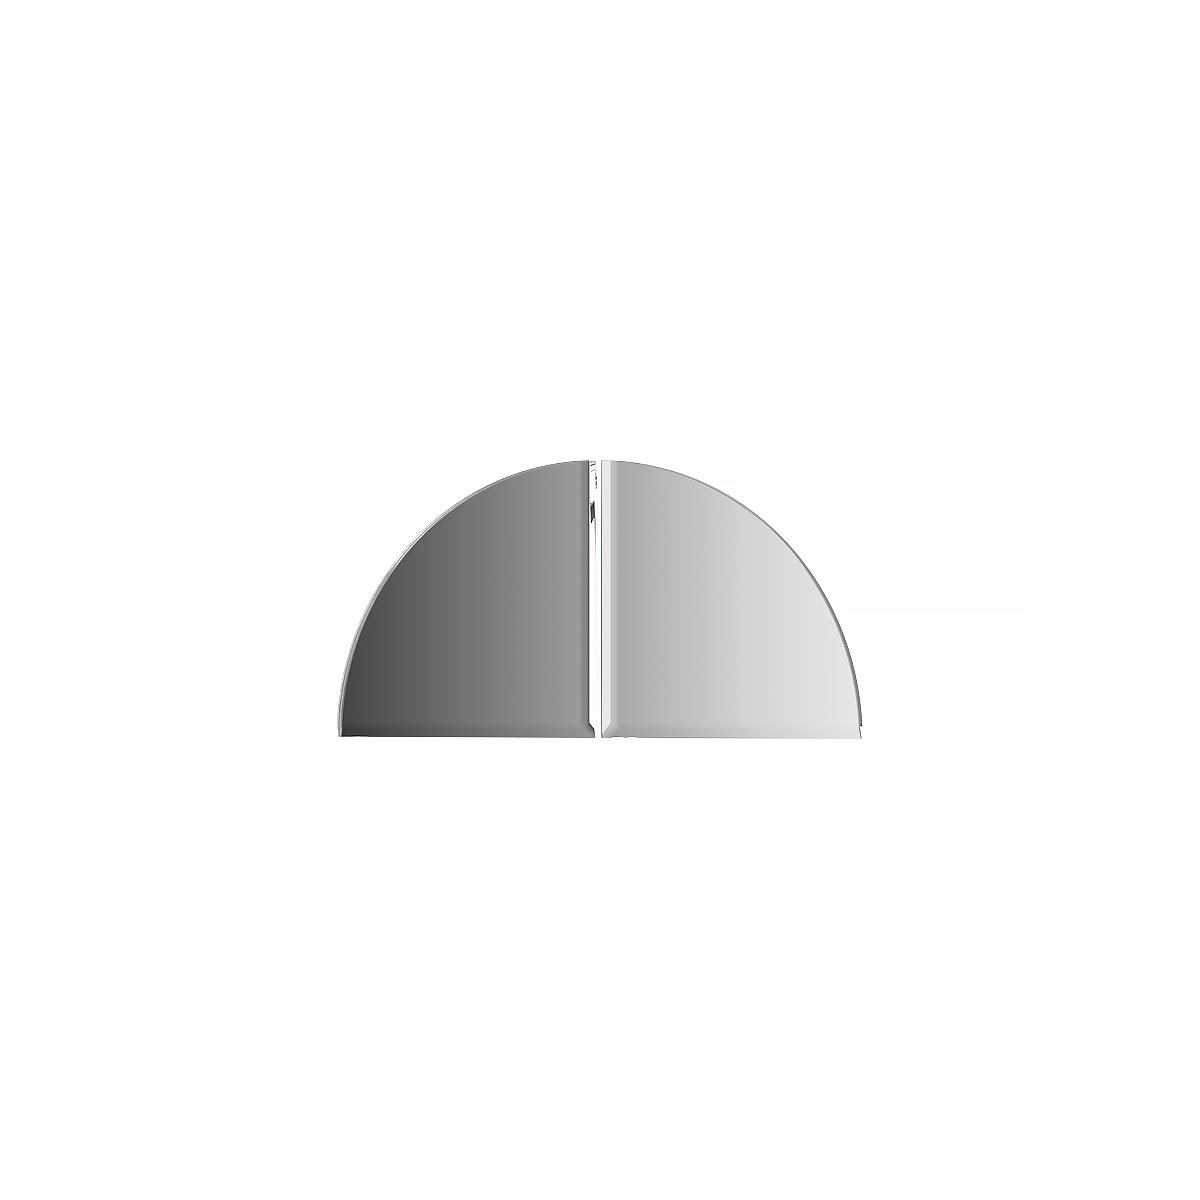 Зеркальная плитка Evoform с фацетом 5 mm - комплект 2 шт четверть круга 10х10 см; серебро